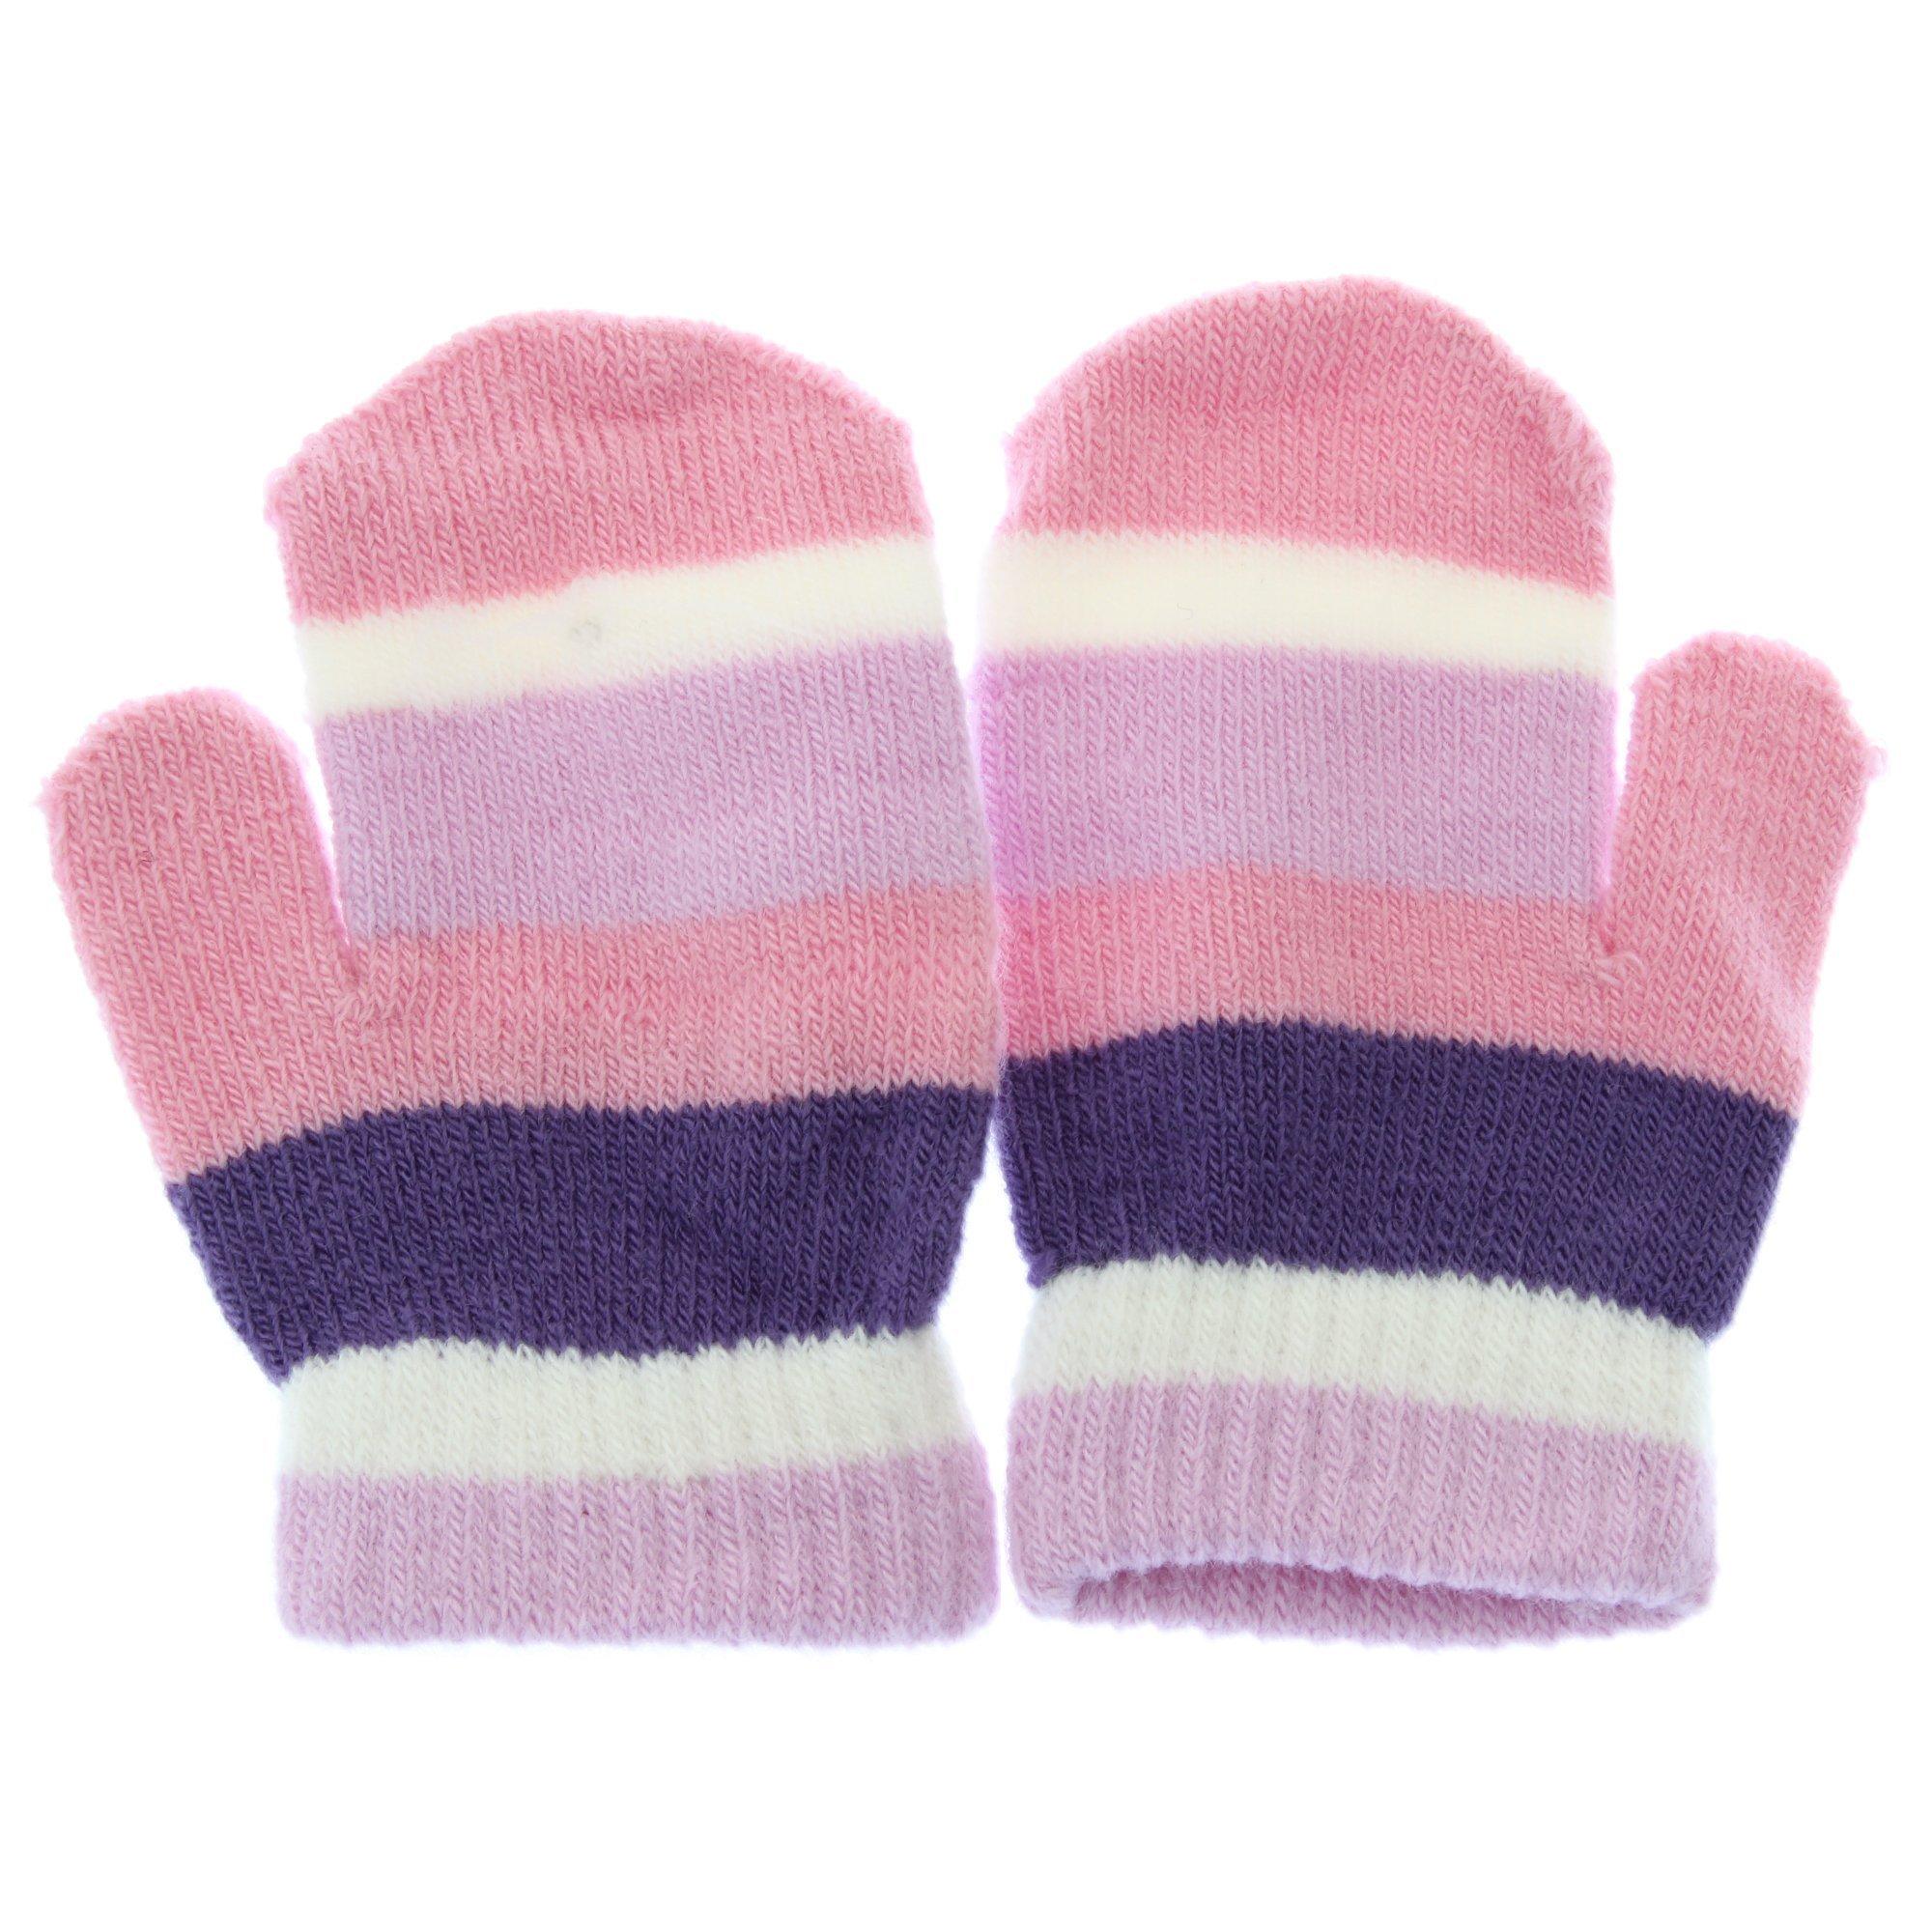 Universal Textiles  Winter Handschuhe Magic mit Streifen 